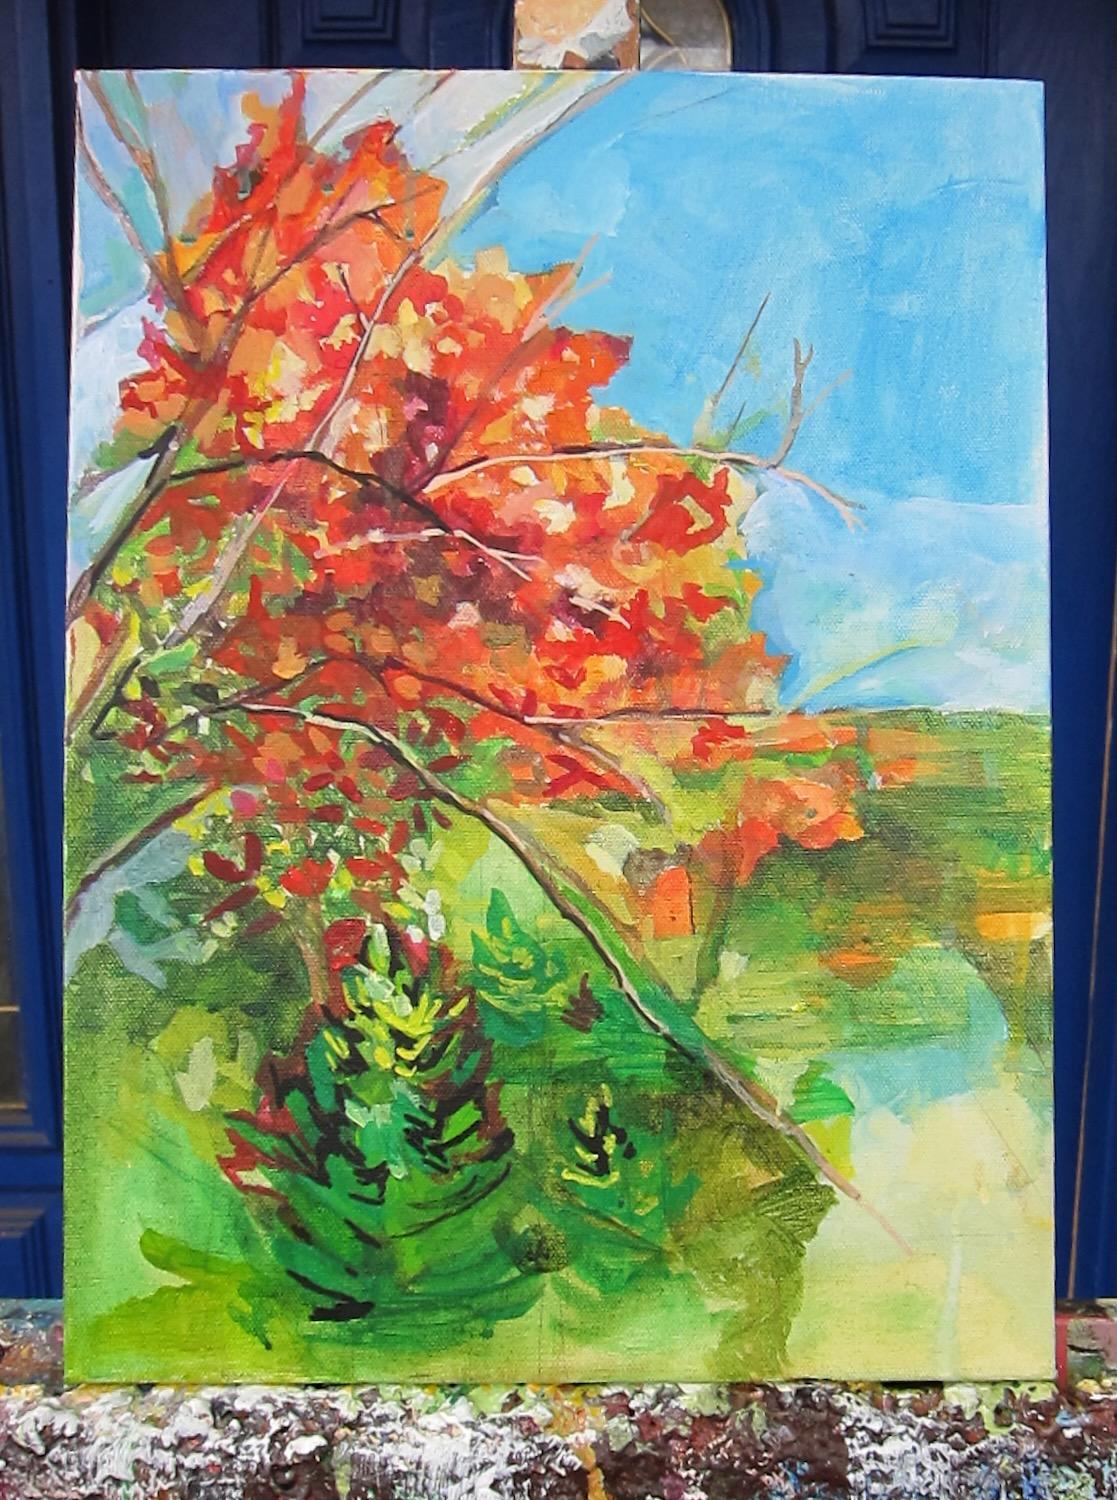 <p>Commentaires de l'artiste<br>Les nuances de l'automne dansent dans la scène impressionniste de la nature de l'artiste Colette Wirz Nauke. Le paysage fantaisiste est abondamment garni de feuillages rouges et orangés. Colette peint un tapis de vert